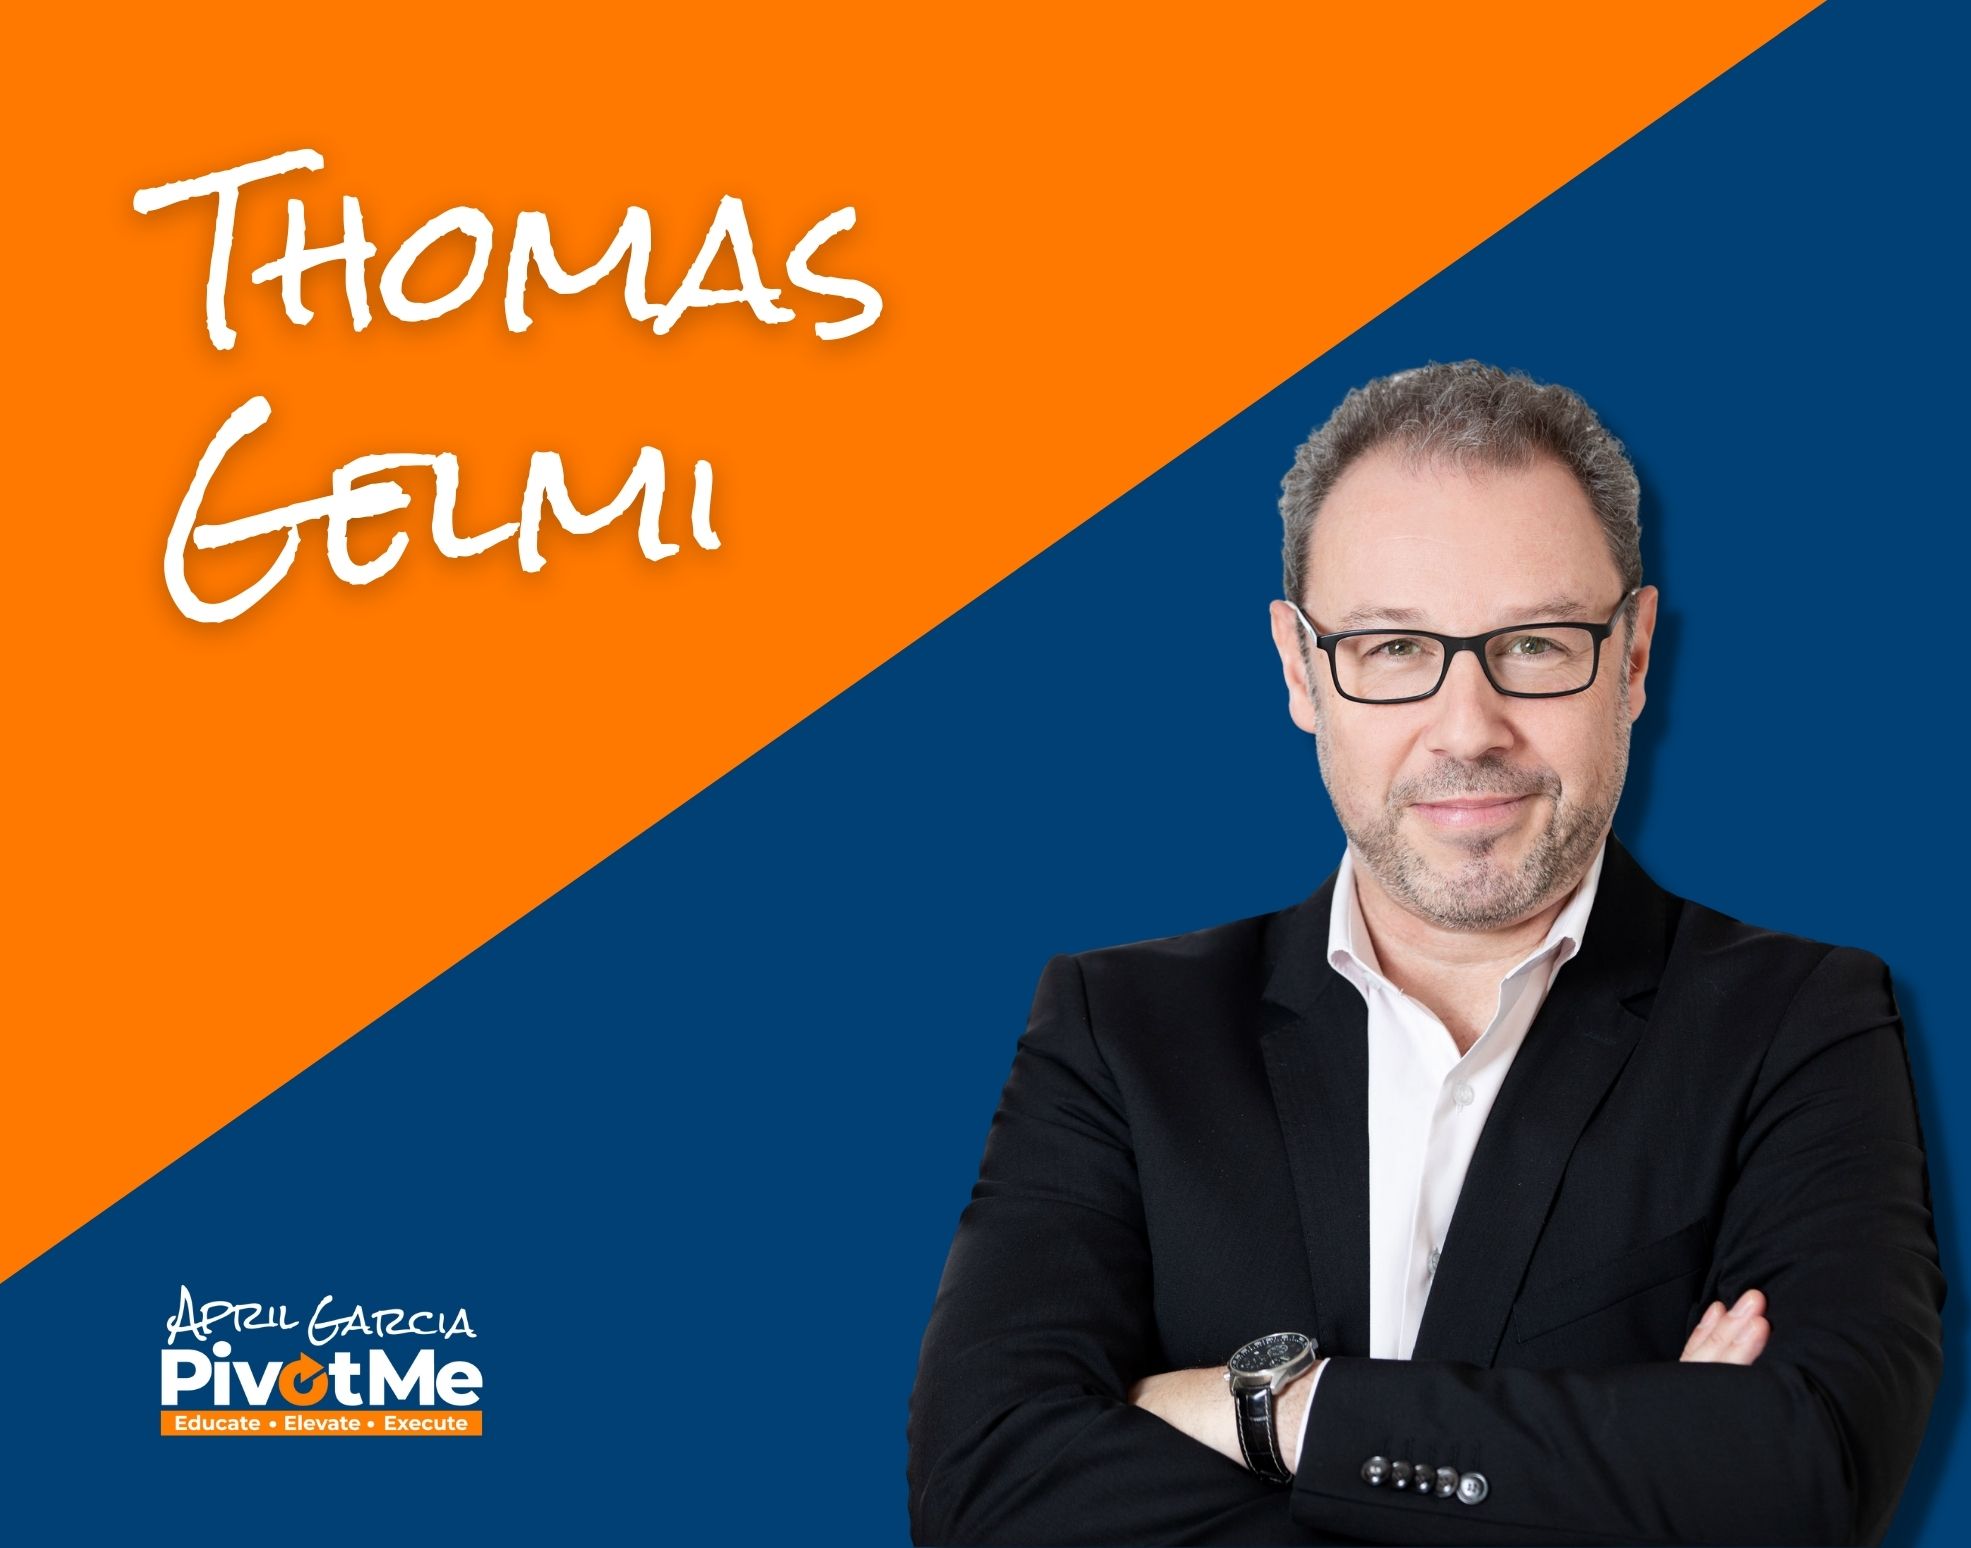 Thomas Gelmi